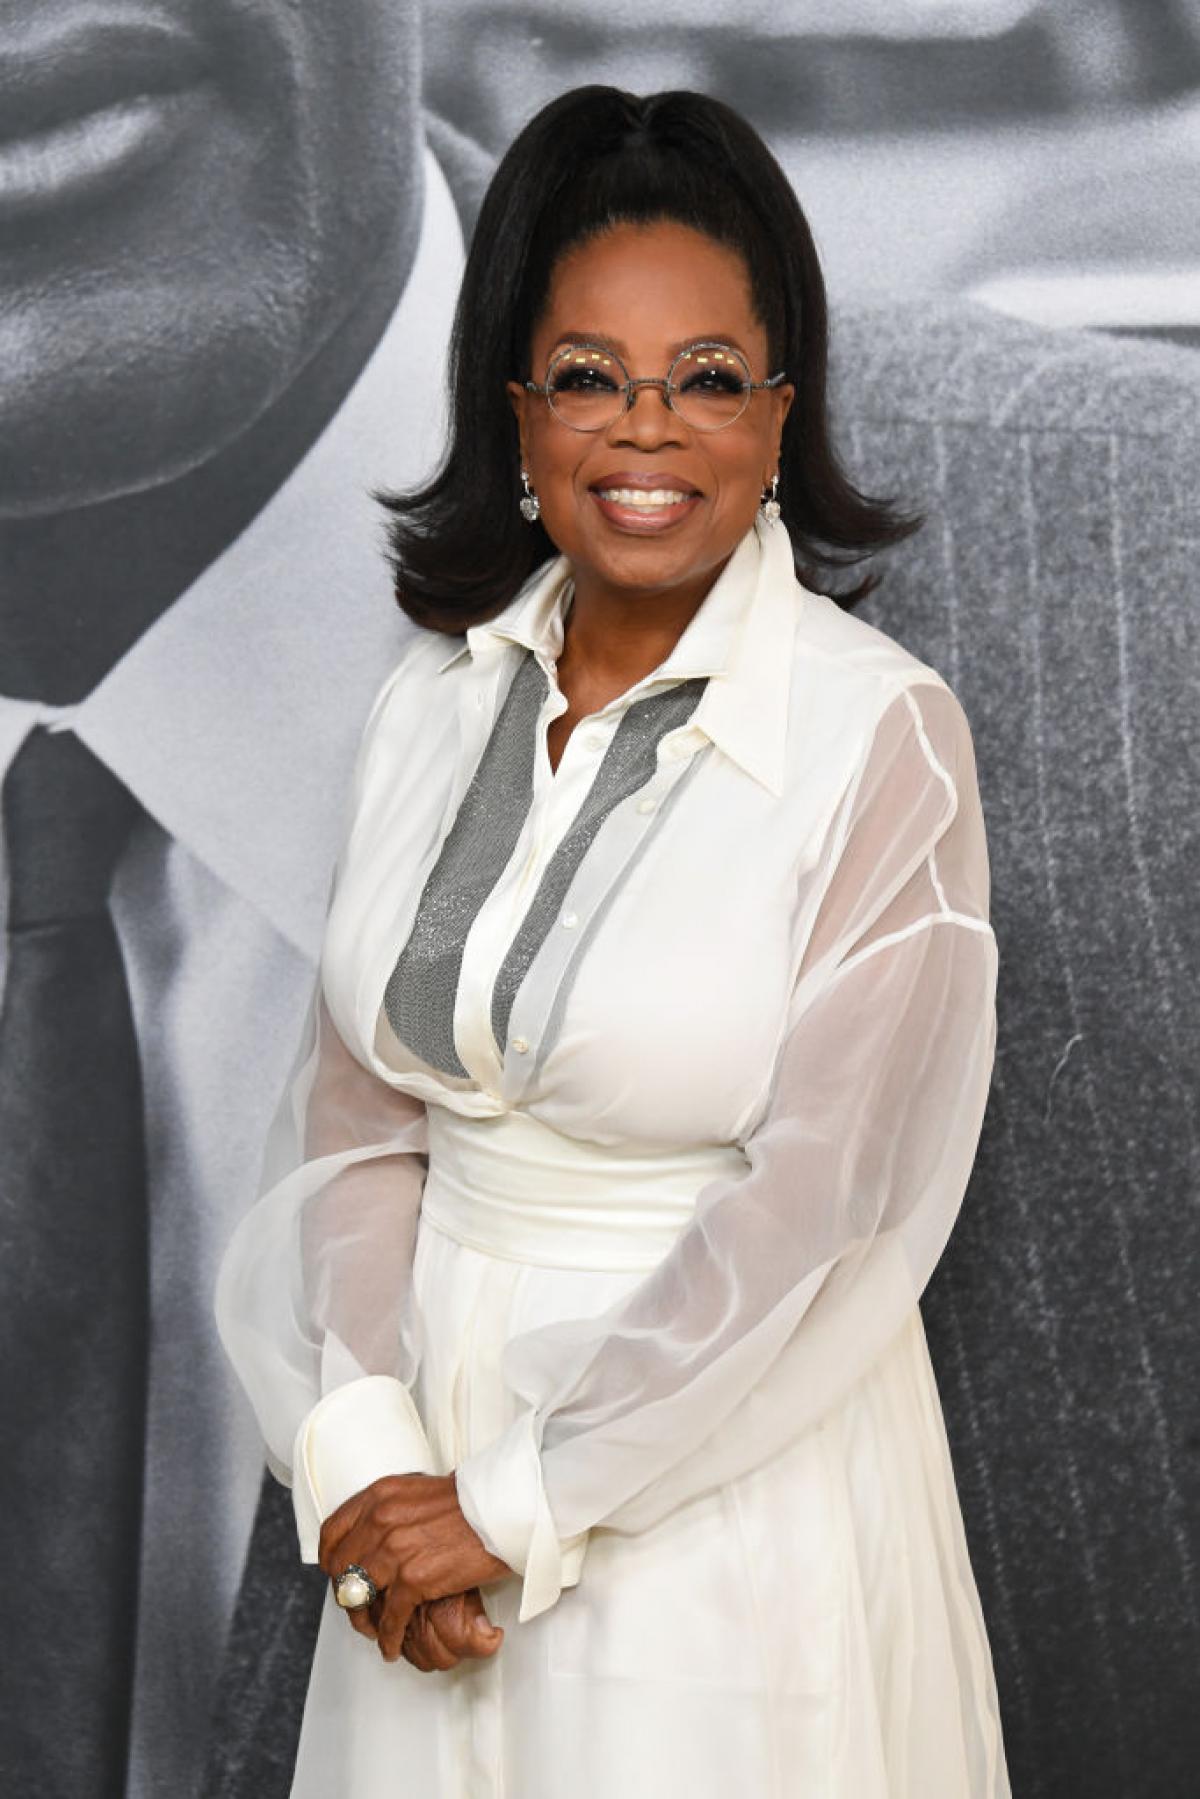 Favoriete presentator: Oprah Winfrey